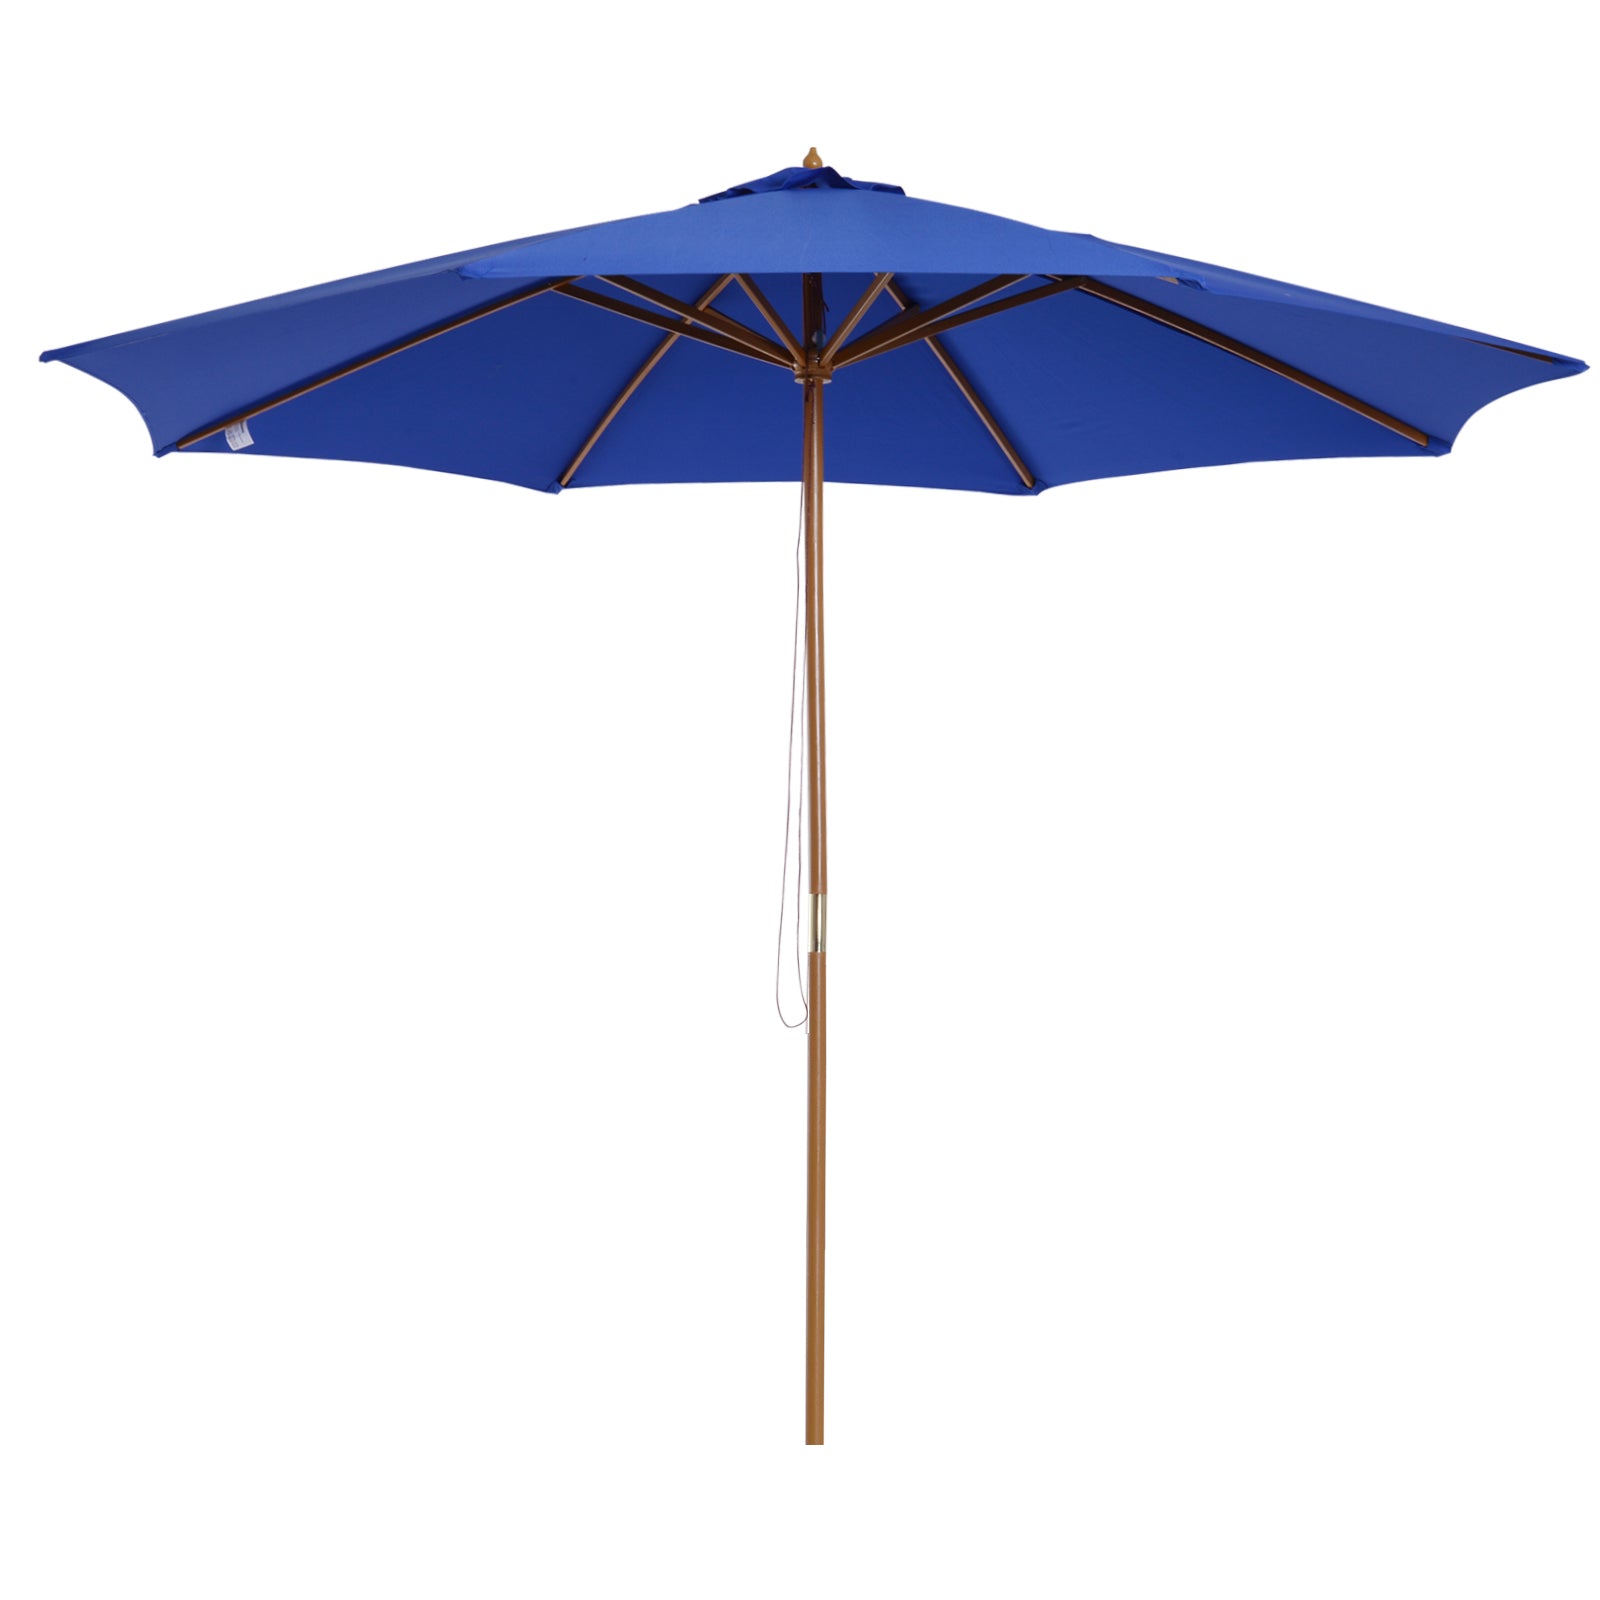 Parasol Murrieta de Nancy - Parasol de balcon - Protection solaire - Abat-jour - Bleu - Hydrofuge - Ajustable - Ø 300 cm